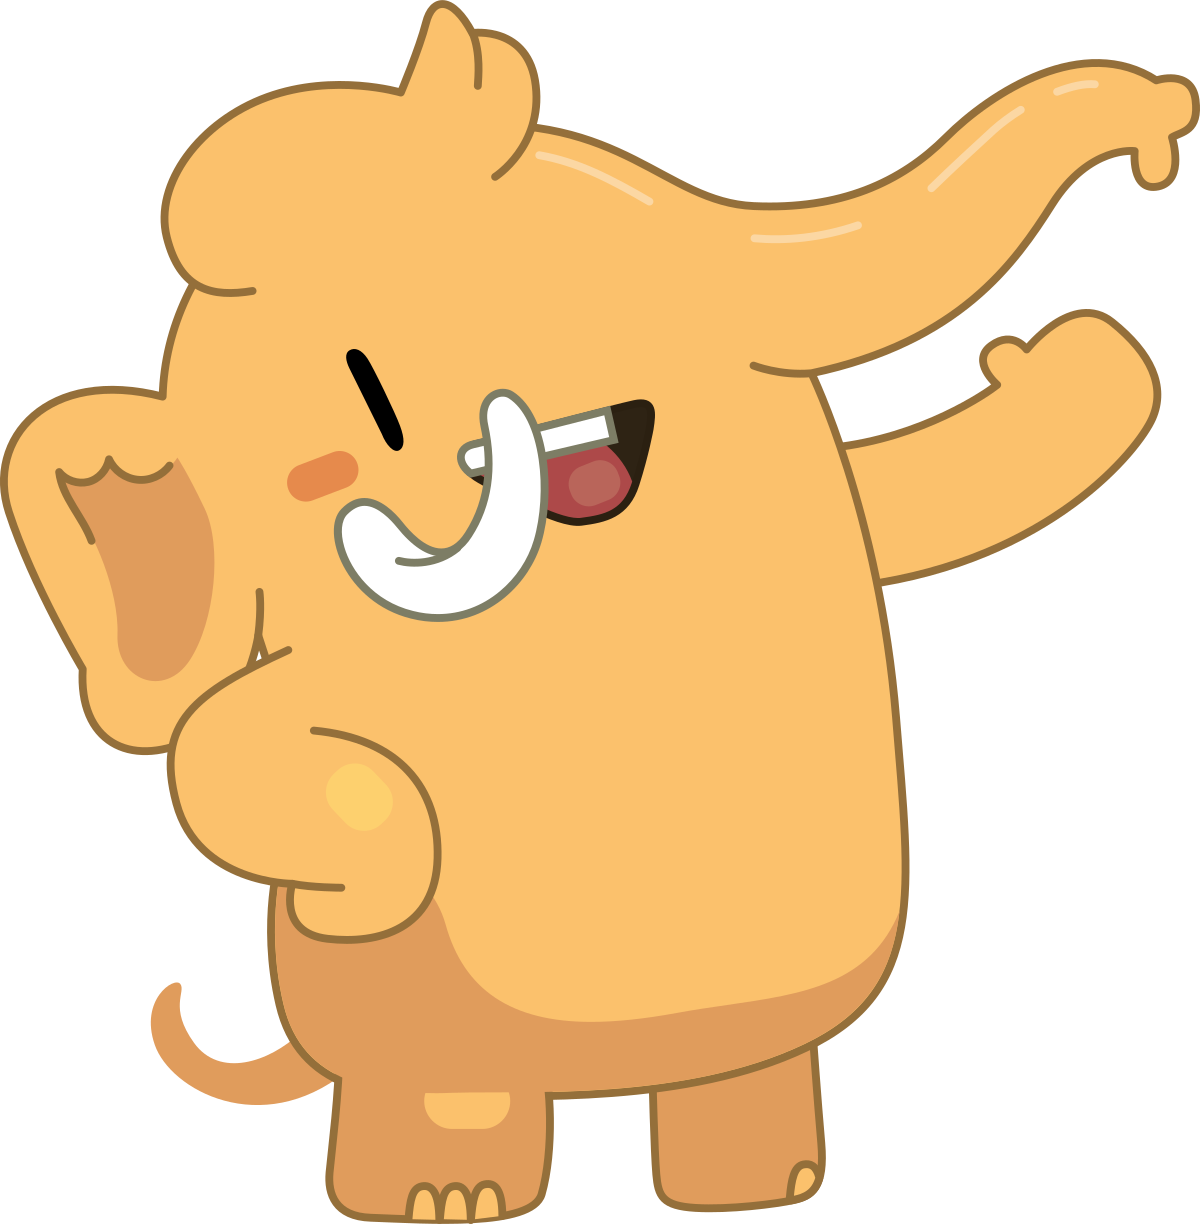 A cartoon Mastodon mascot